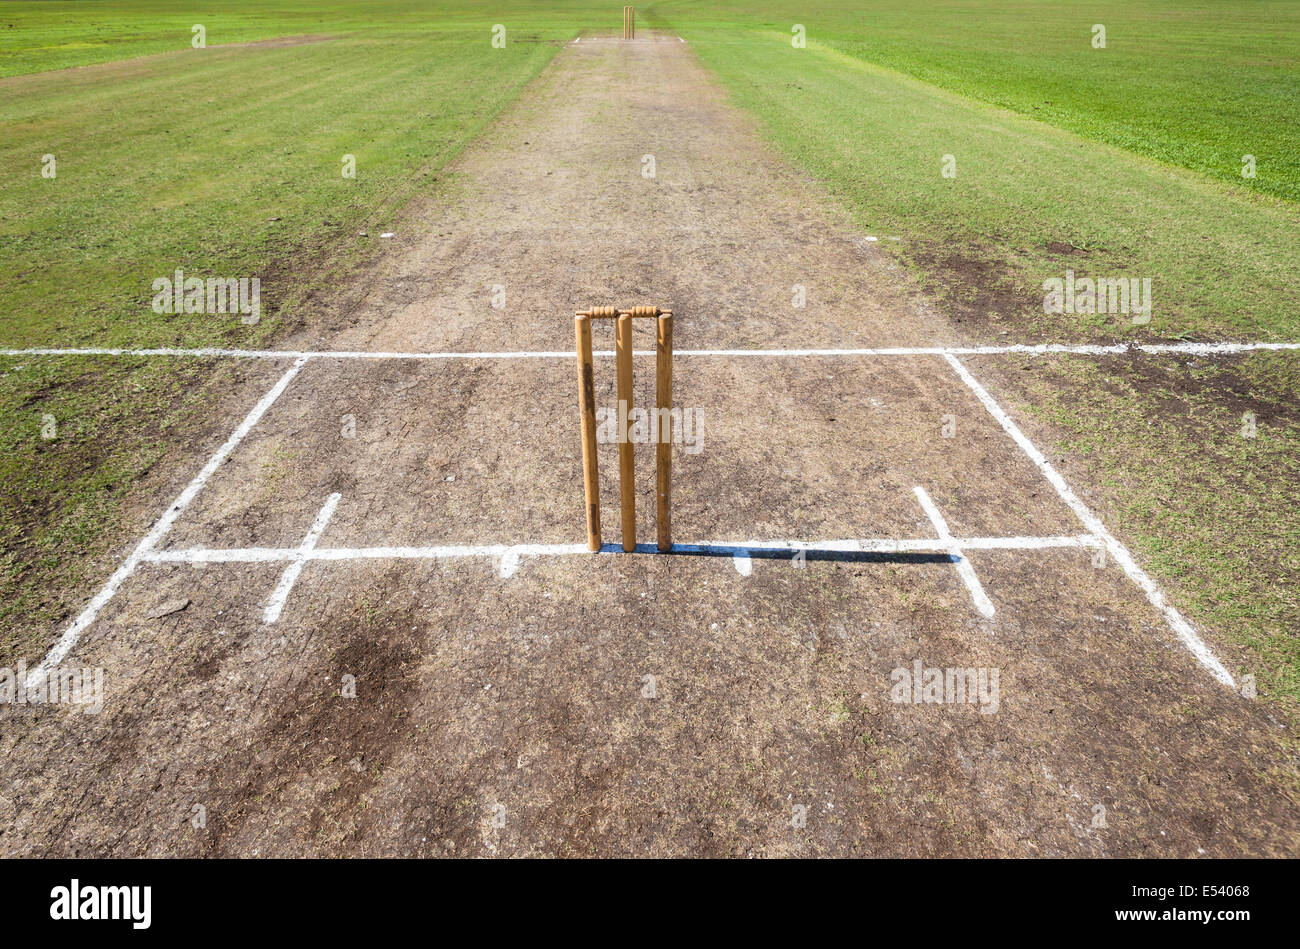 Cricket Feld Veranstaltungsort Nahaufnahme Foto Taktabstand Oberfläche mit Wickets und Wimper bowling Linien spielen weiß markiert. Stockfoto